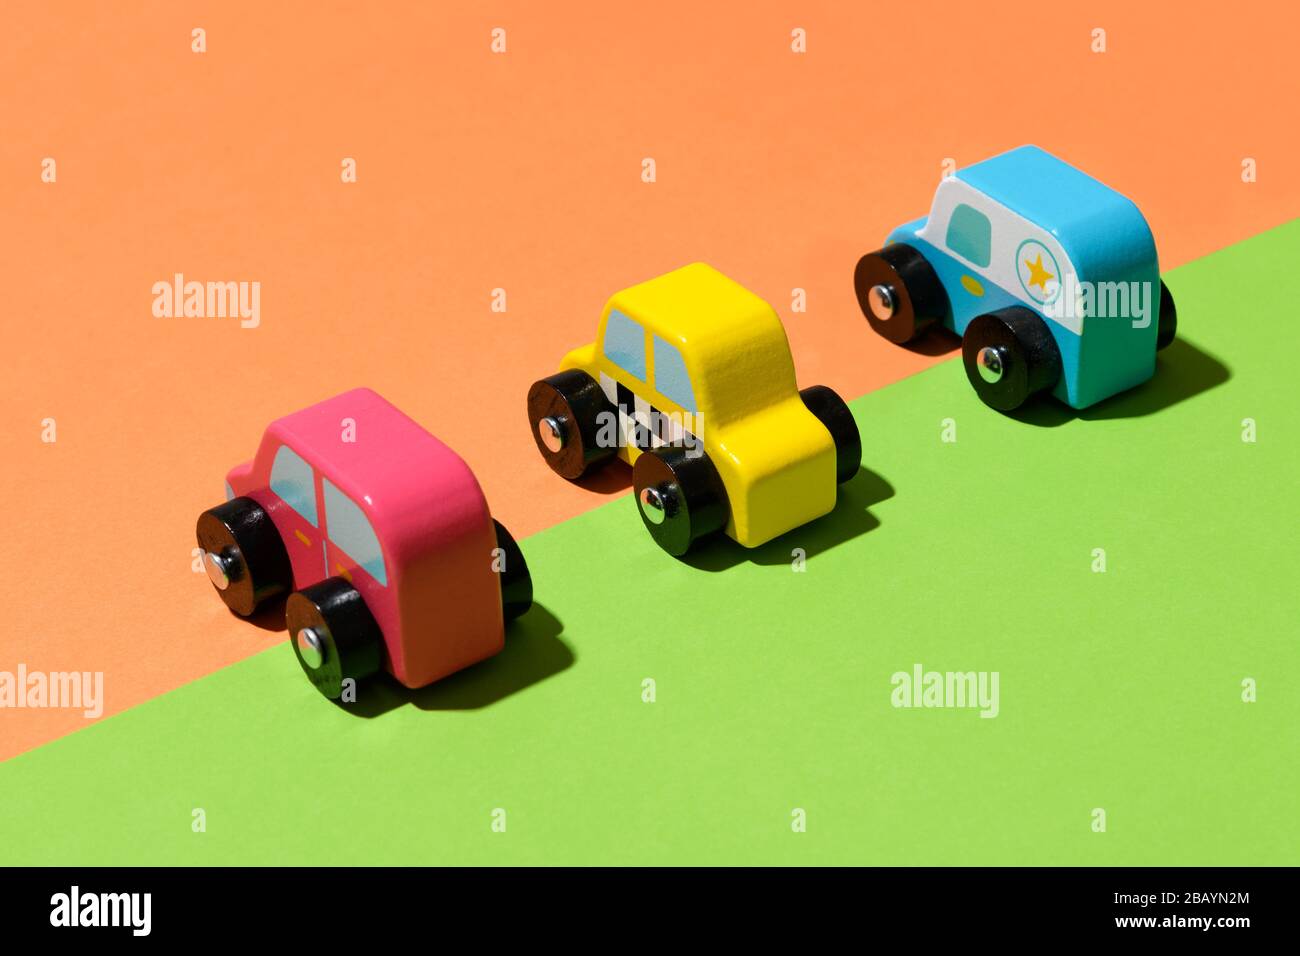 Drei bunte, rustikale, handgefertigte Spielzeugautos aus Holz auf einem geteilten grünen und orangefarbenen Hintergrund, die entlang der diagonalen Farbverteilung aufgereiht sind Stockfoto